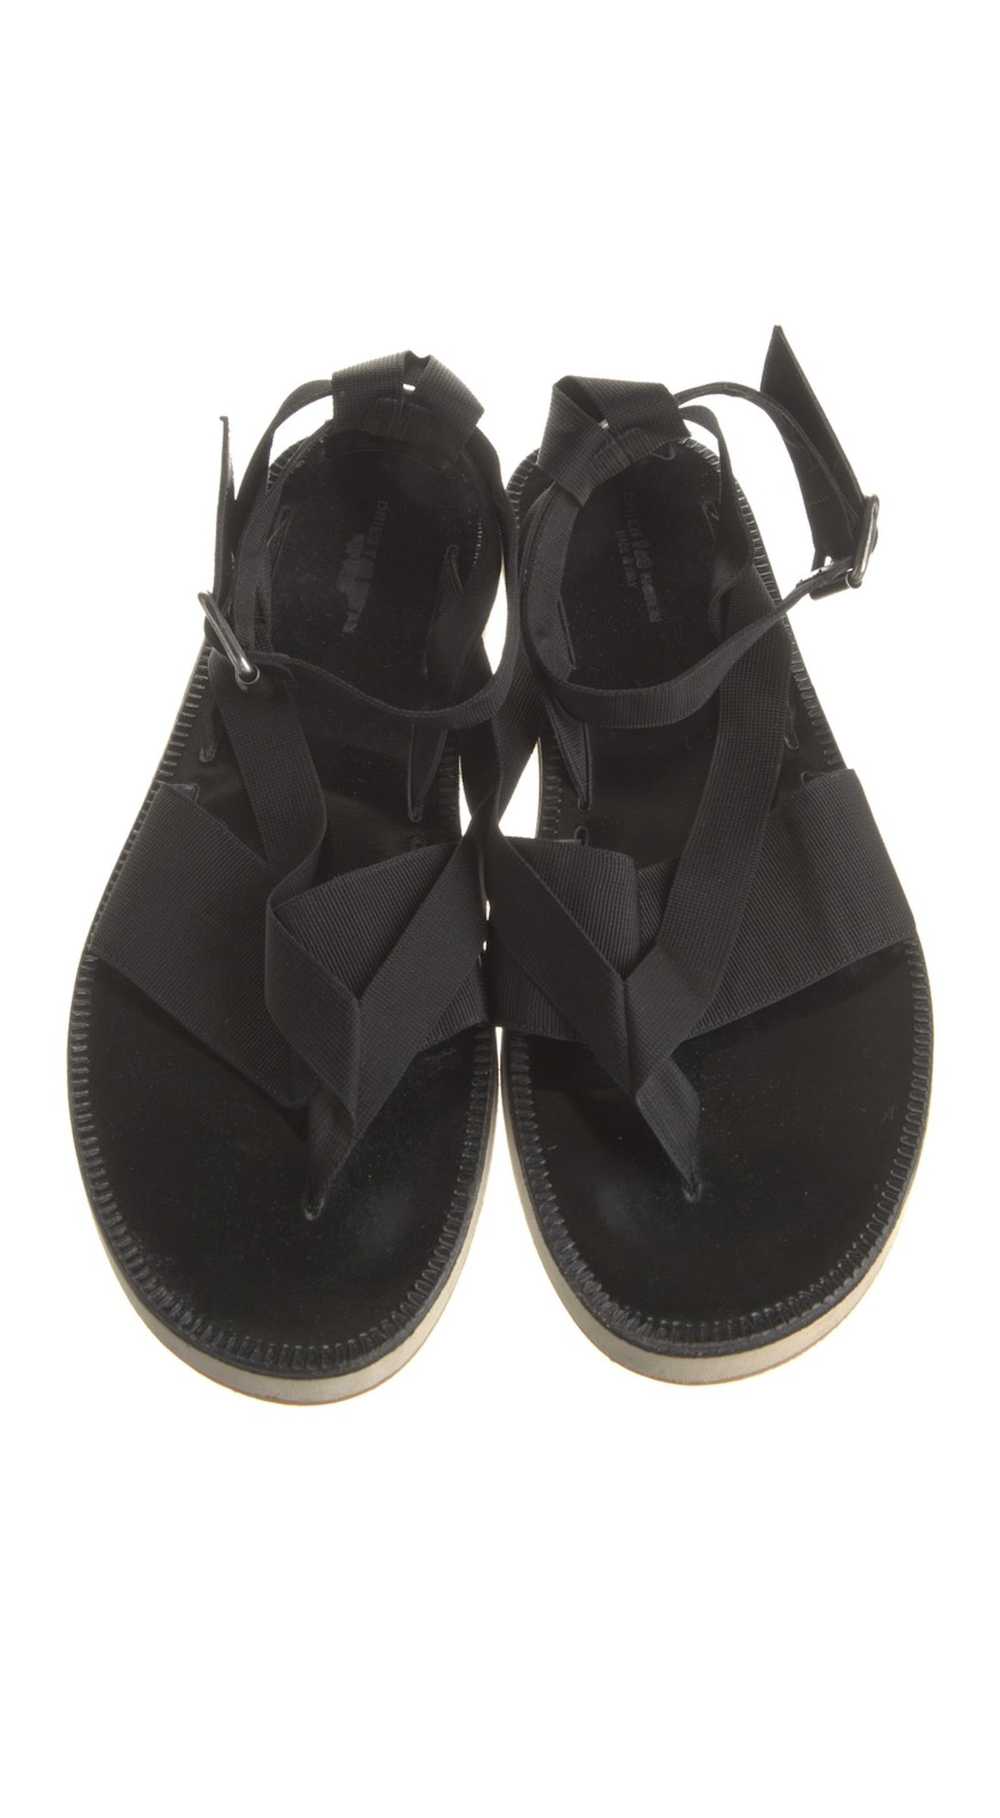 Dries Van Noten Dries Van Noten Leather Sandals - image 1